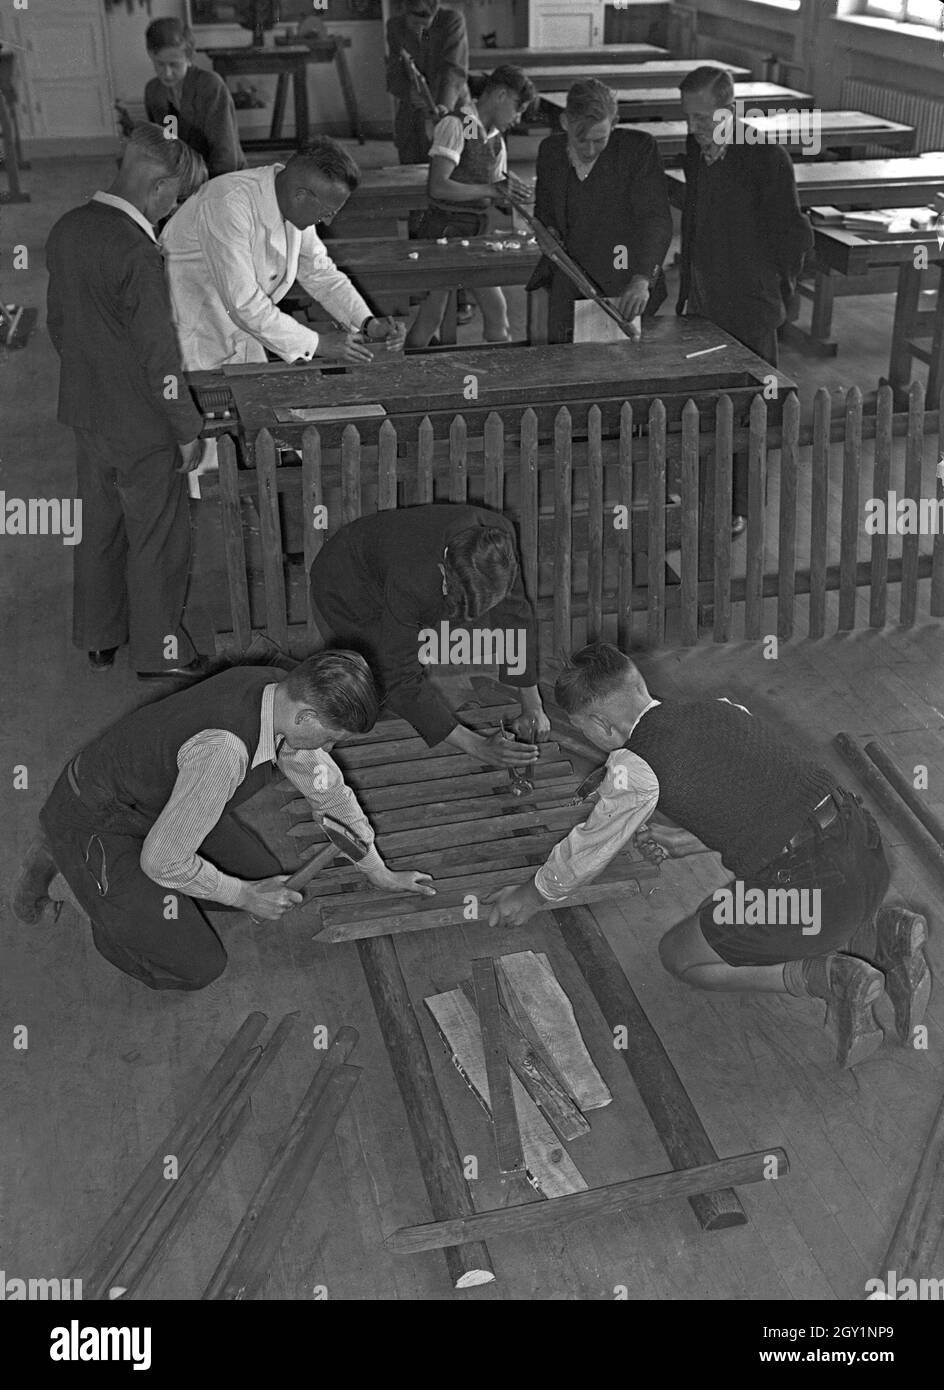 Auszubildende bauen in der Berufsschule einen Gartenzaun, Deutschland 1930er Jahre. Apprentices constructing a fence at their vocational school, Germany 1930s. Stock Photo